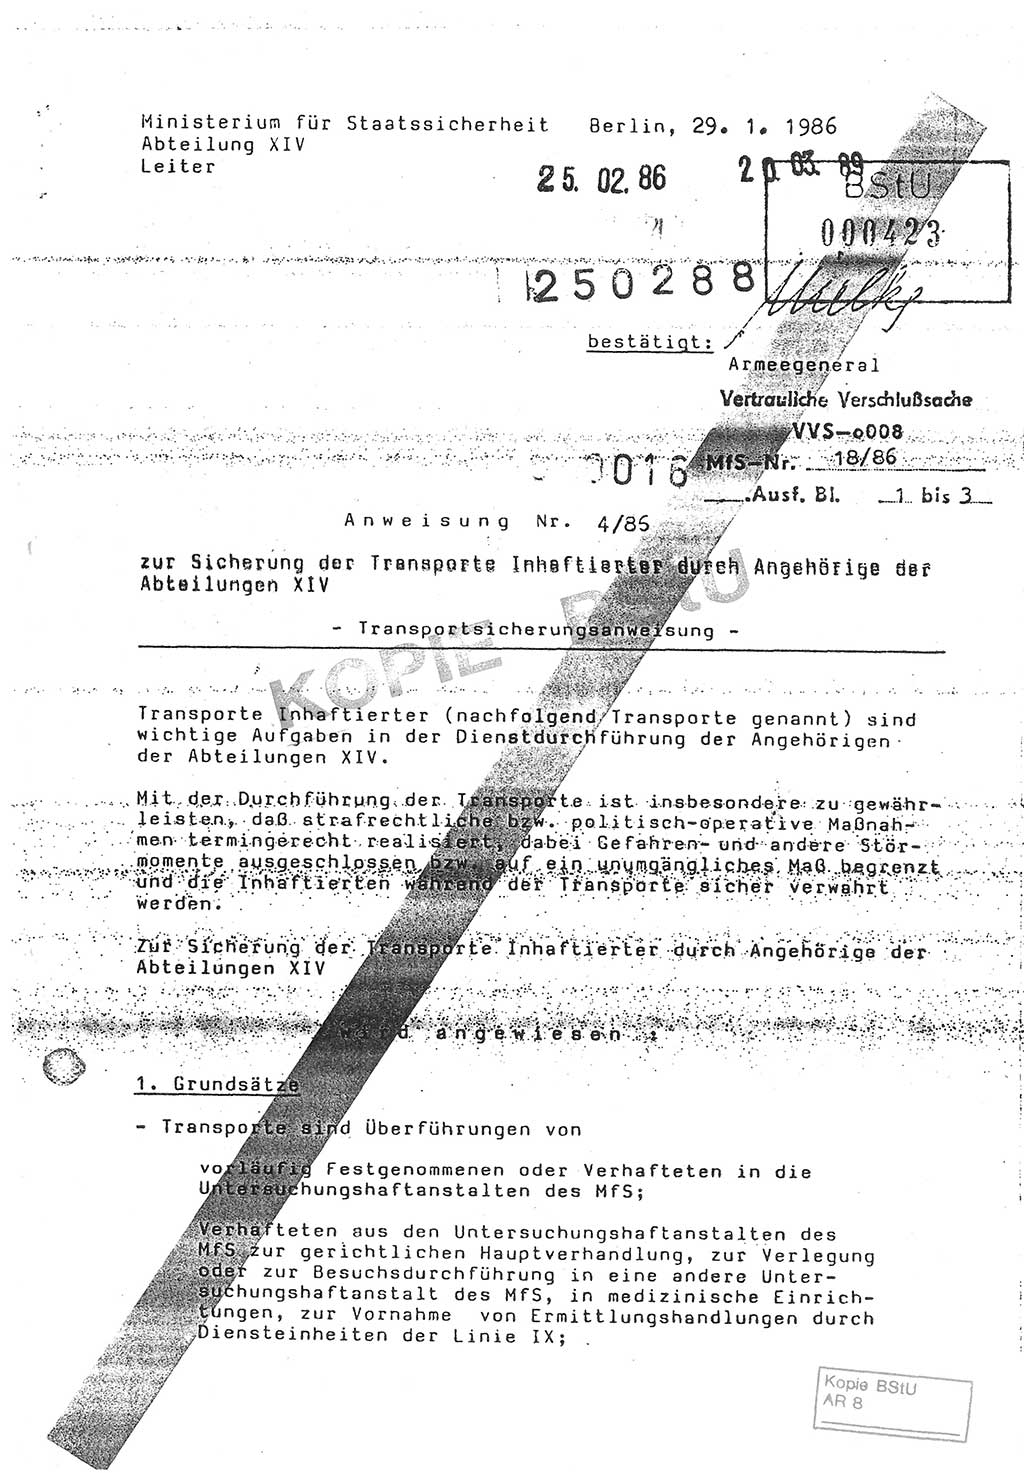 Anweisung Nr. 4/86 zur Sicherung der Transporte Inhaftierter durch Angehörige der Abteilungen ⅩⅣ, Transportsicherungsanweisung, Ministerium für Staatssicherheit (MfS) [Deutsche Demokratische Republik (DDR)], Abteilung ⅩⅣ, Leiter, Vertrauliche Verschlußsache (VVS) o008-18/86, Berlin, 29.1.1986, Seite 1 (Anw. 4/86 MfS DDR Abt. ⅩⅣ Ltr. VVS o008-18/86 1986, S. 1)